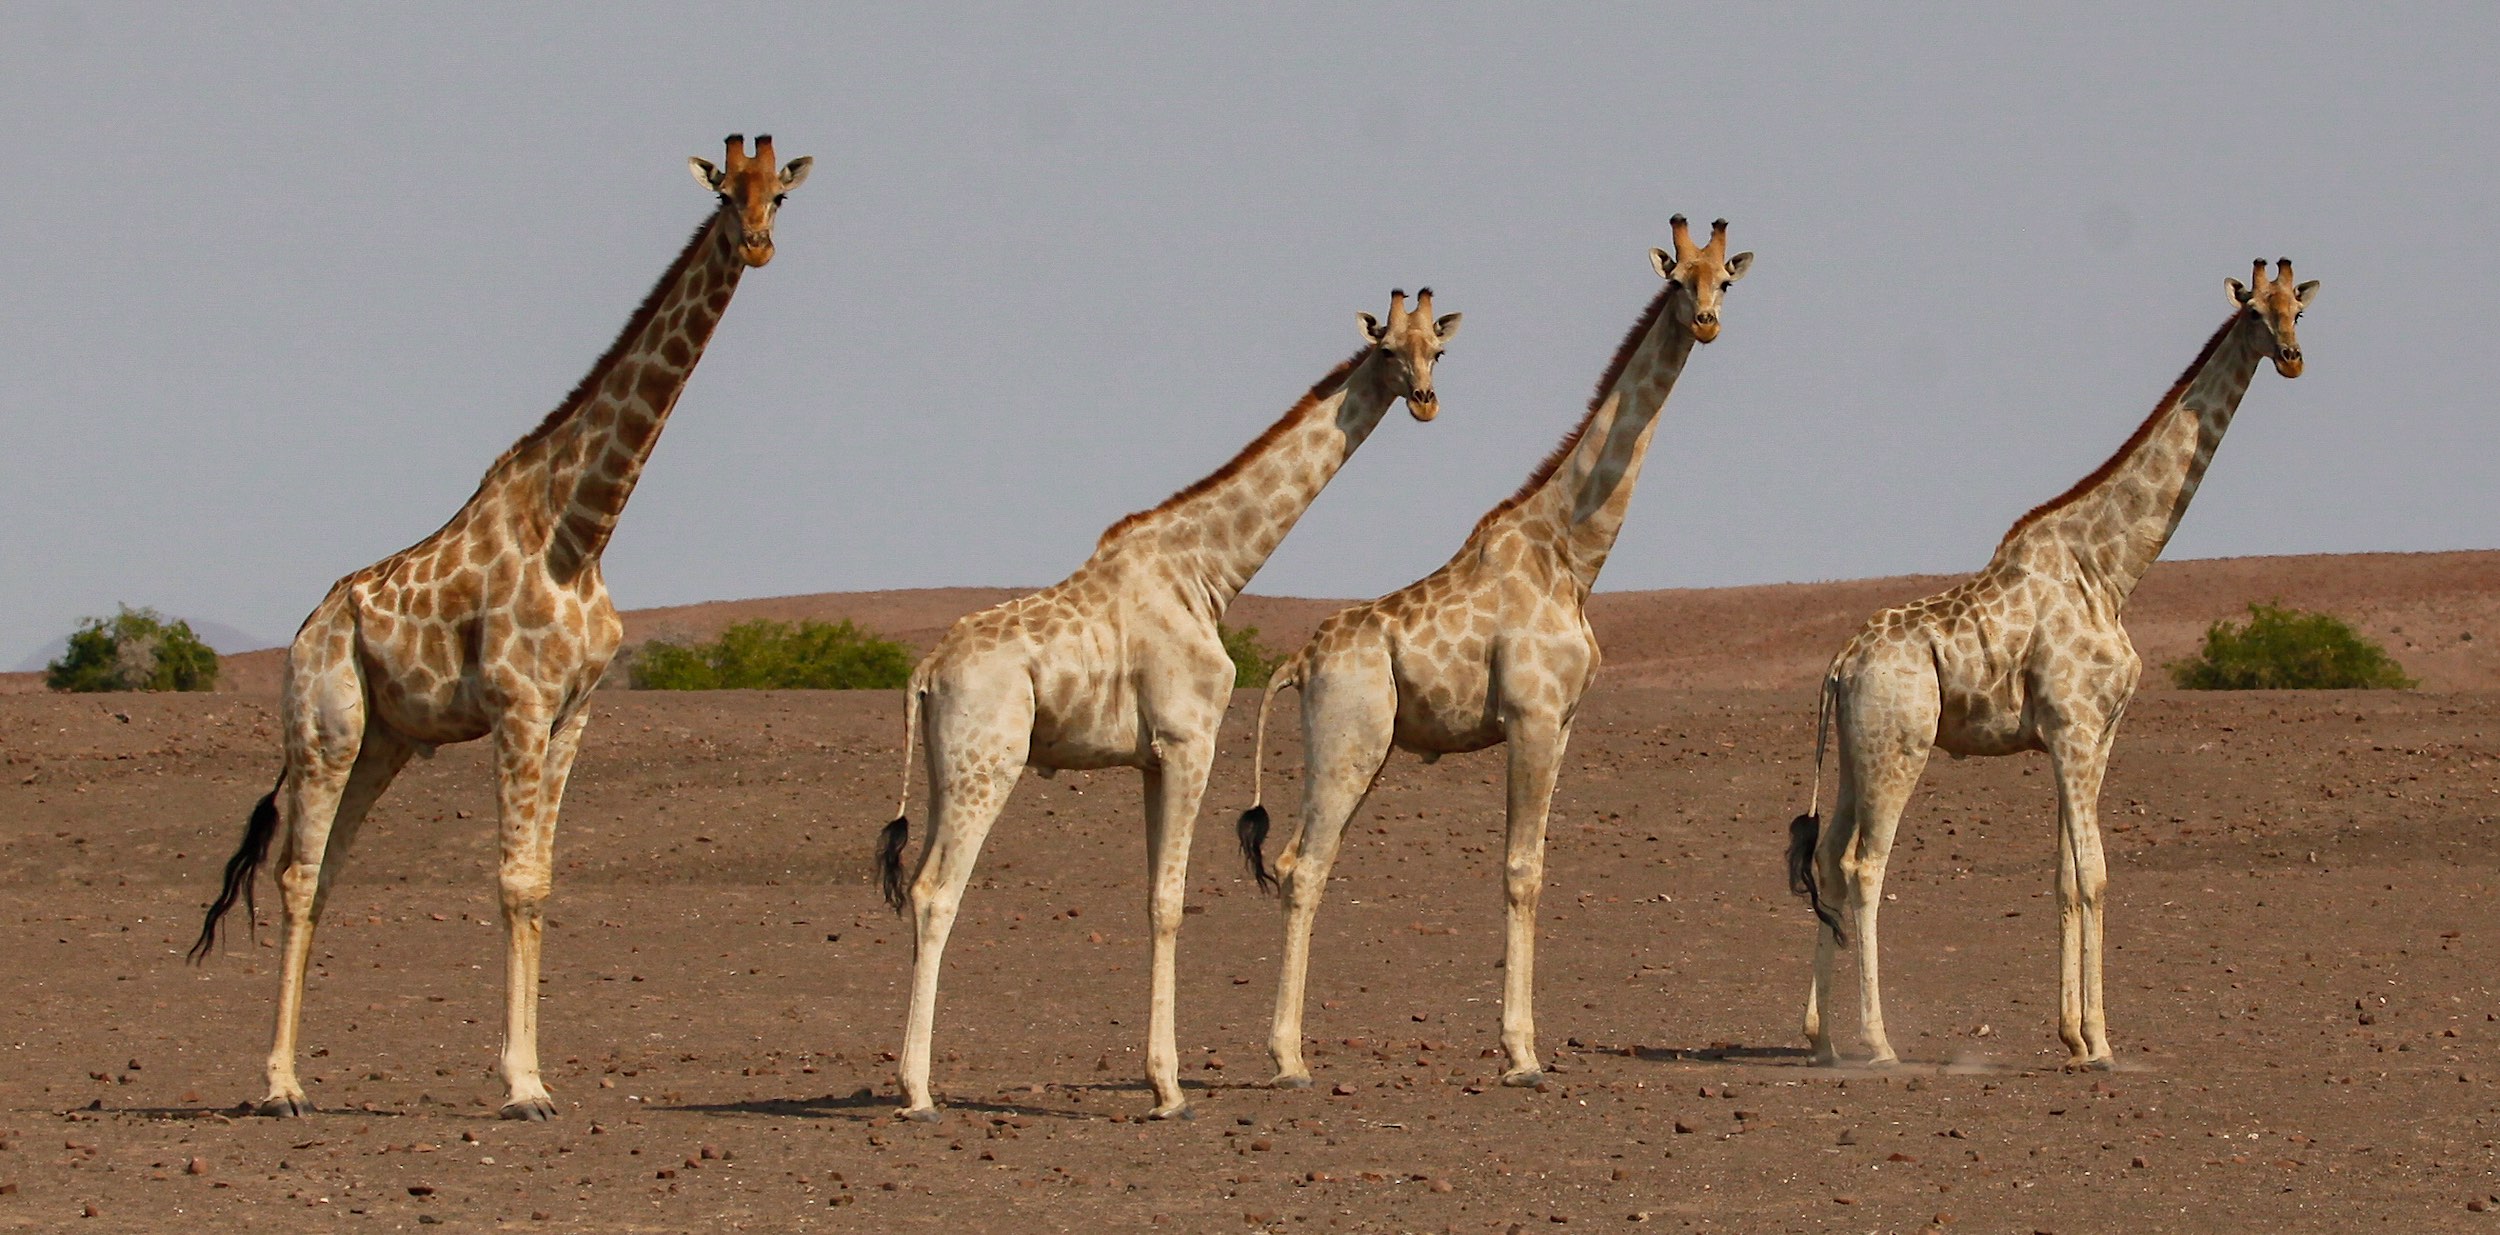 Four male giraffes standing in the desert.